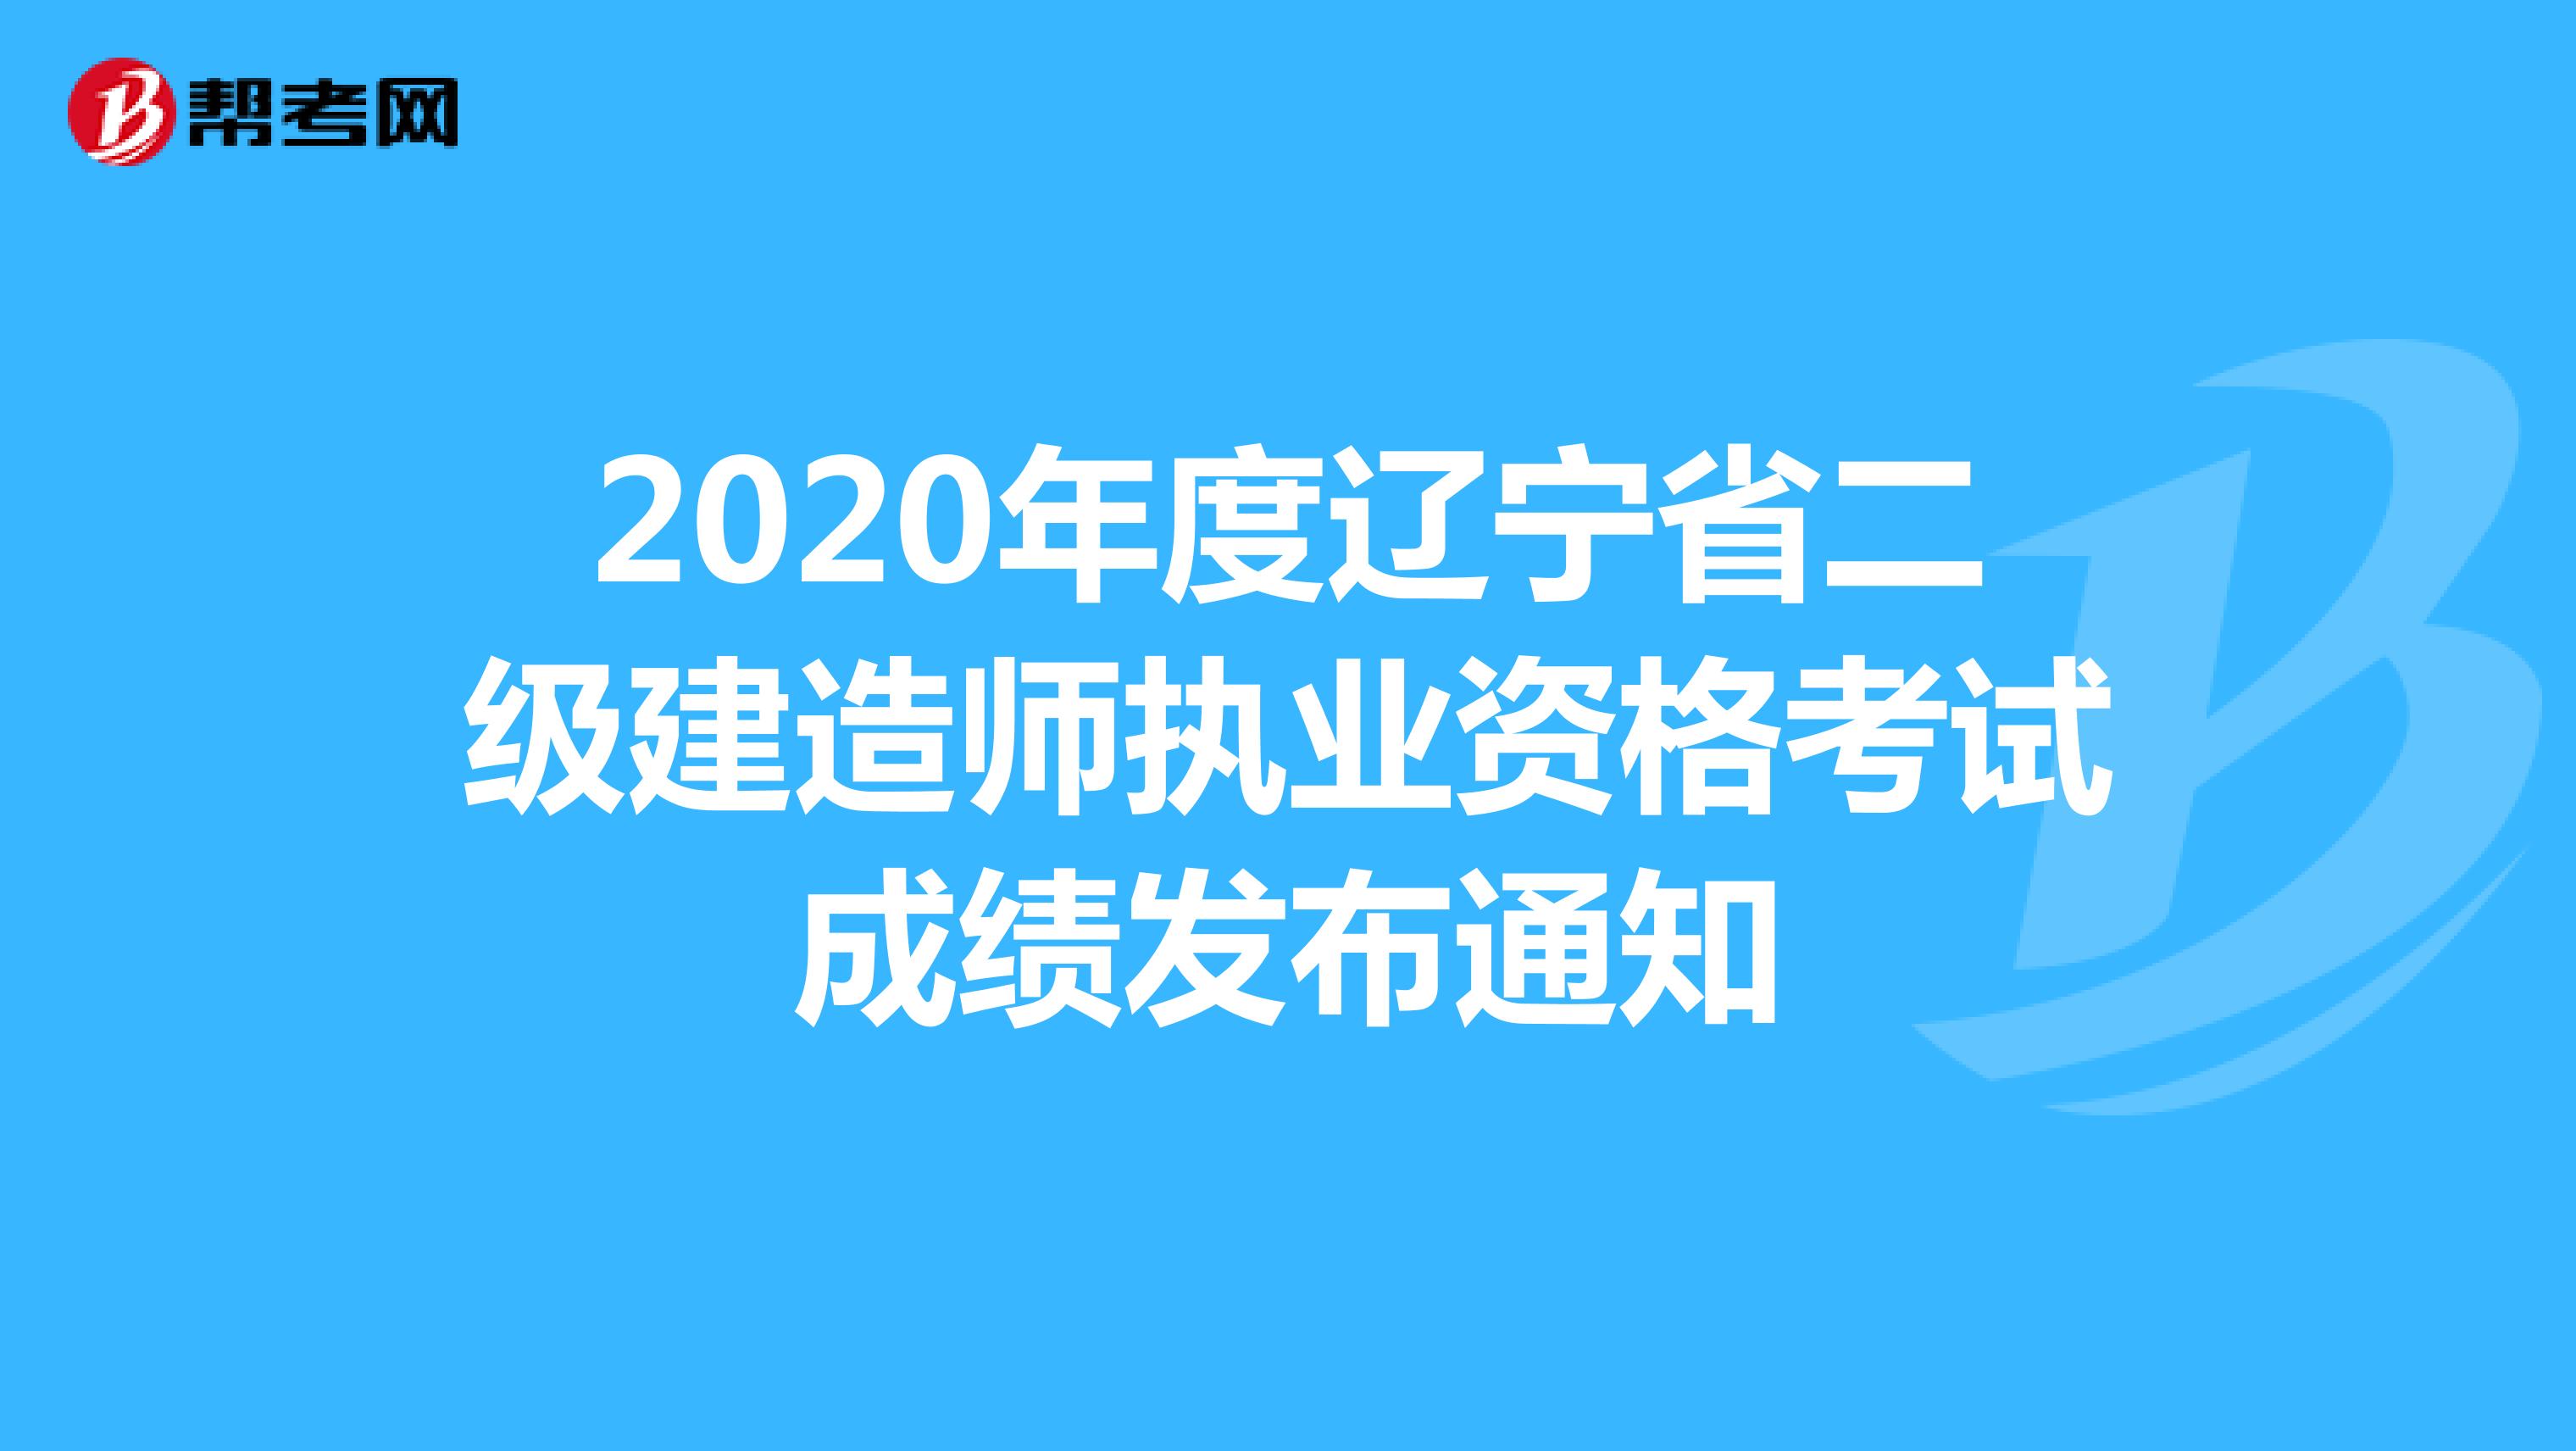 2020年度辽宁省二级建造师执业资格考试成绩发布通知